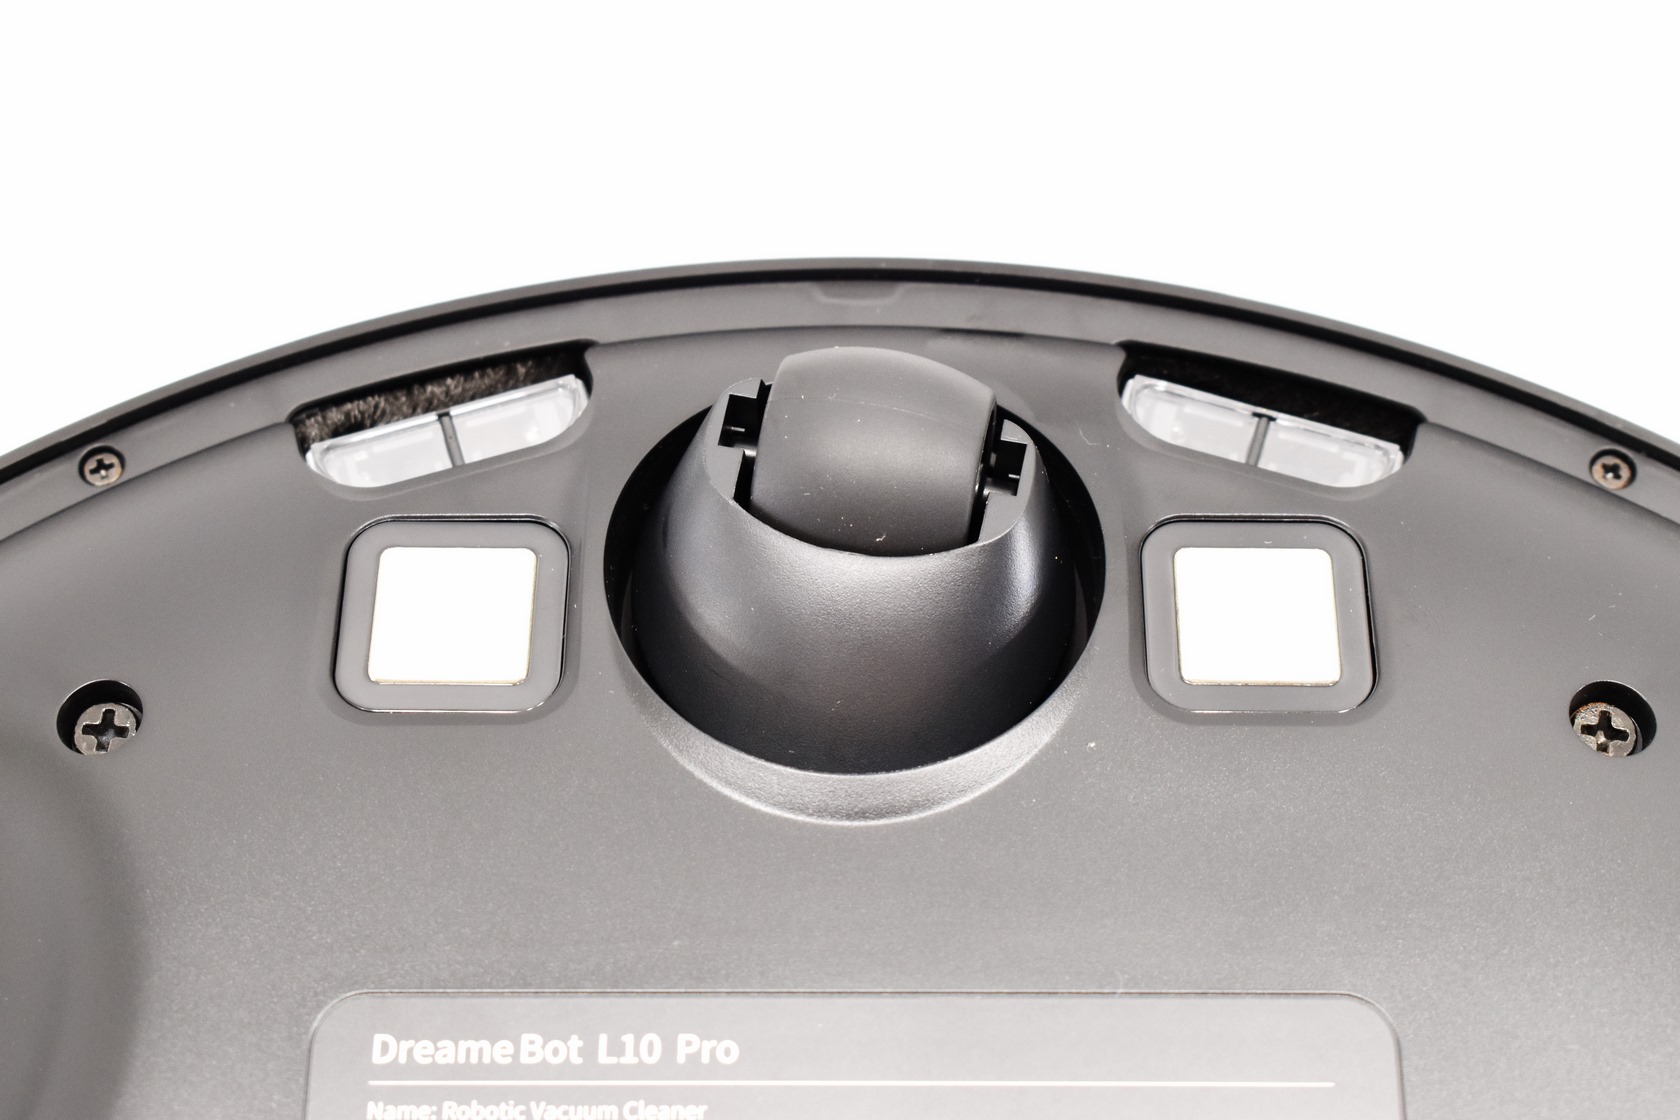 Dreame Bot L10 Pro review